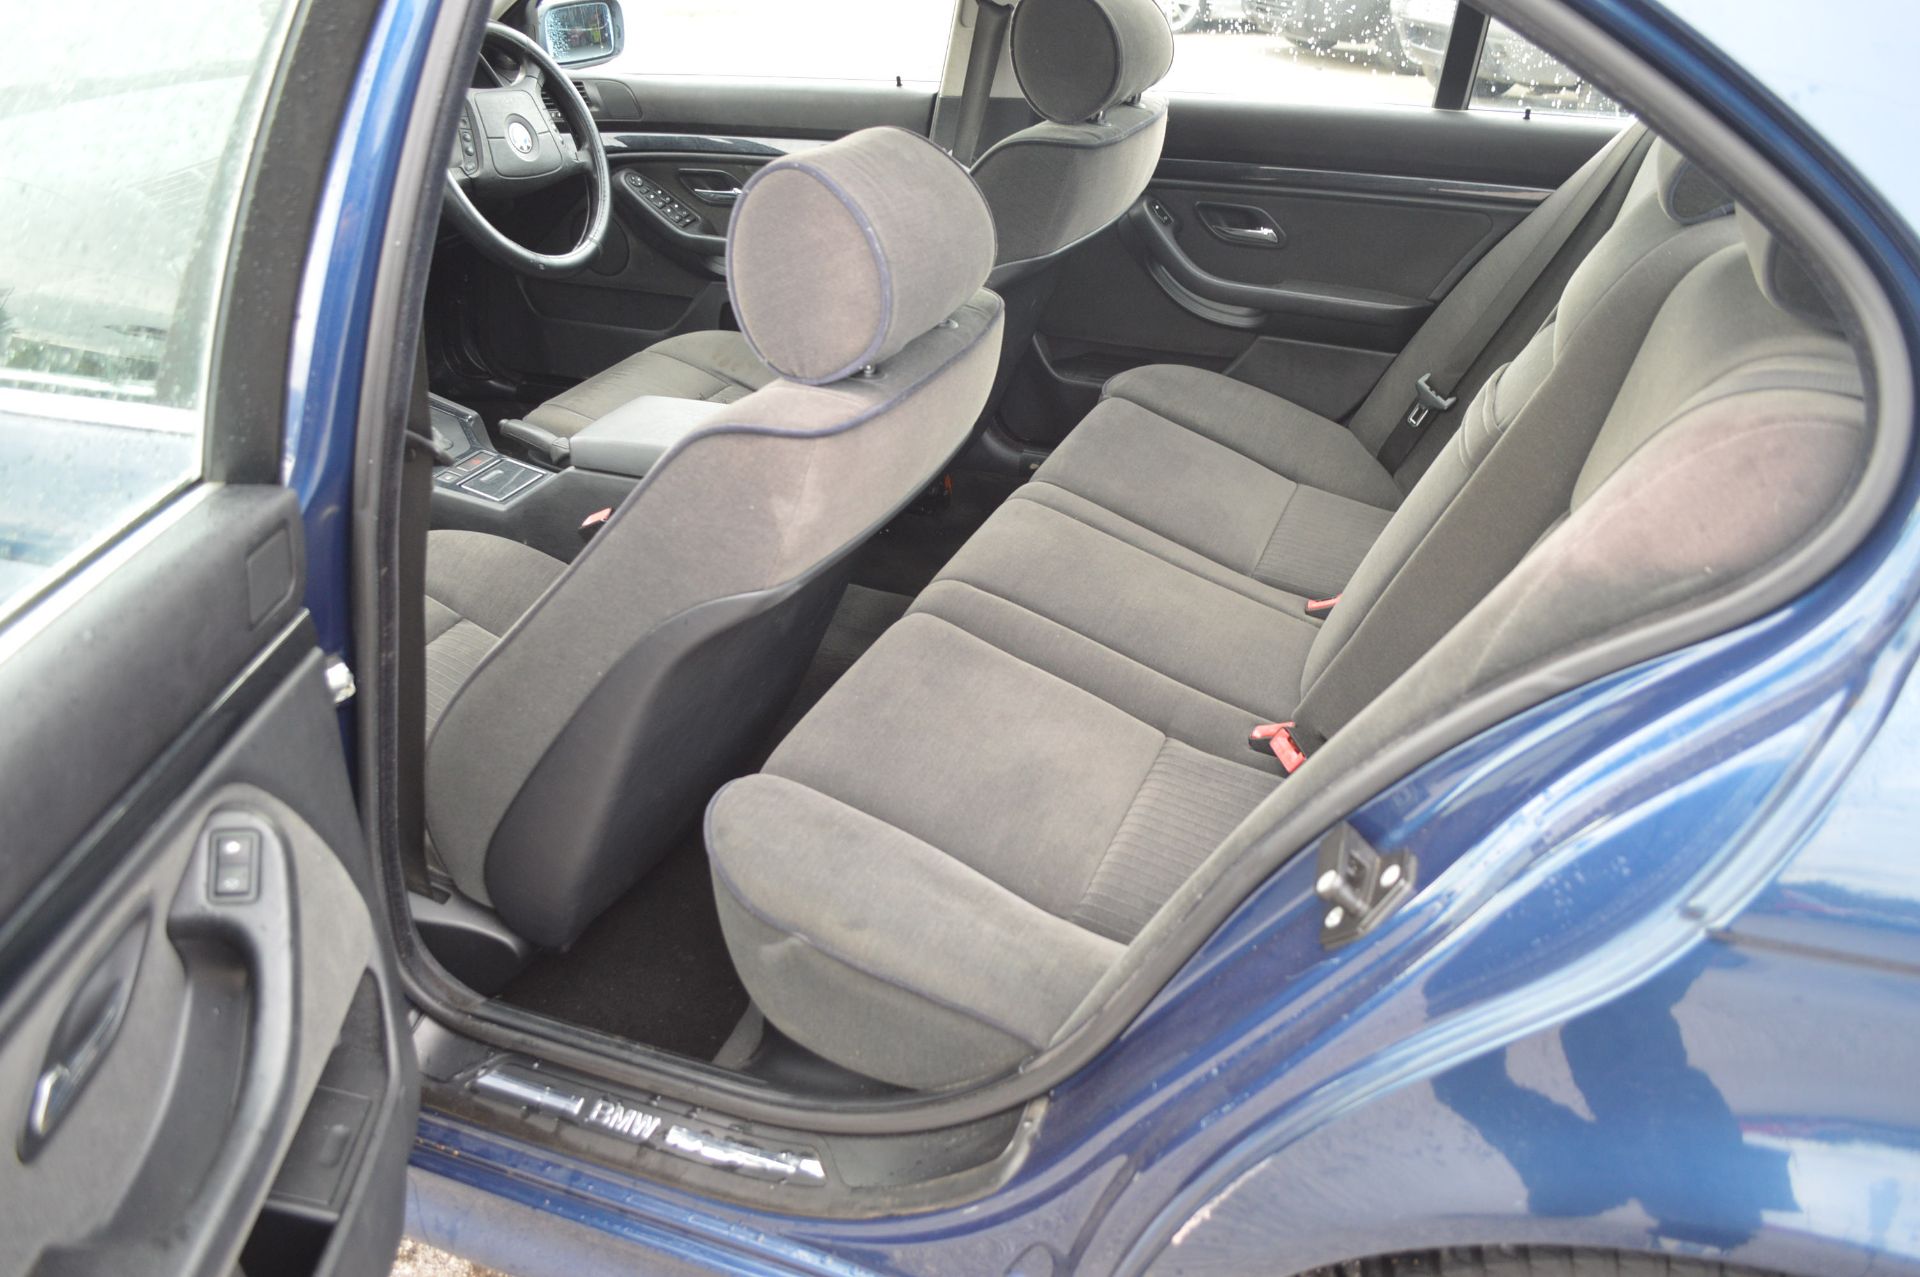 1998/R REG BLUE BMW 520I SE AUTOMATIC, AIR CON, 165K MILES *NO VAT* - Image 14 of 34